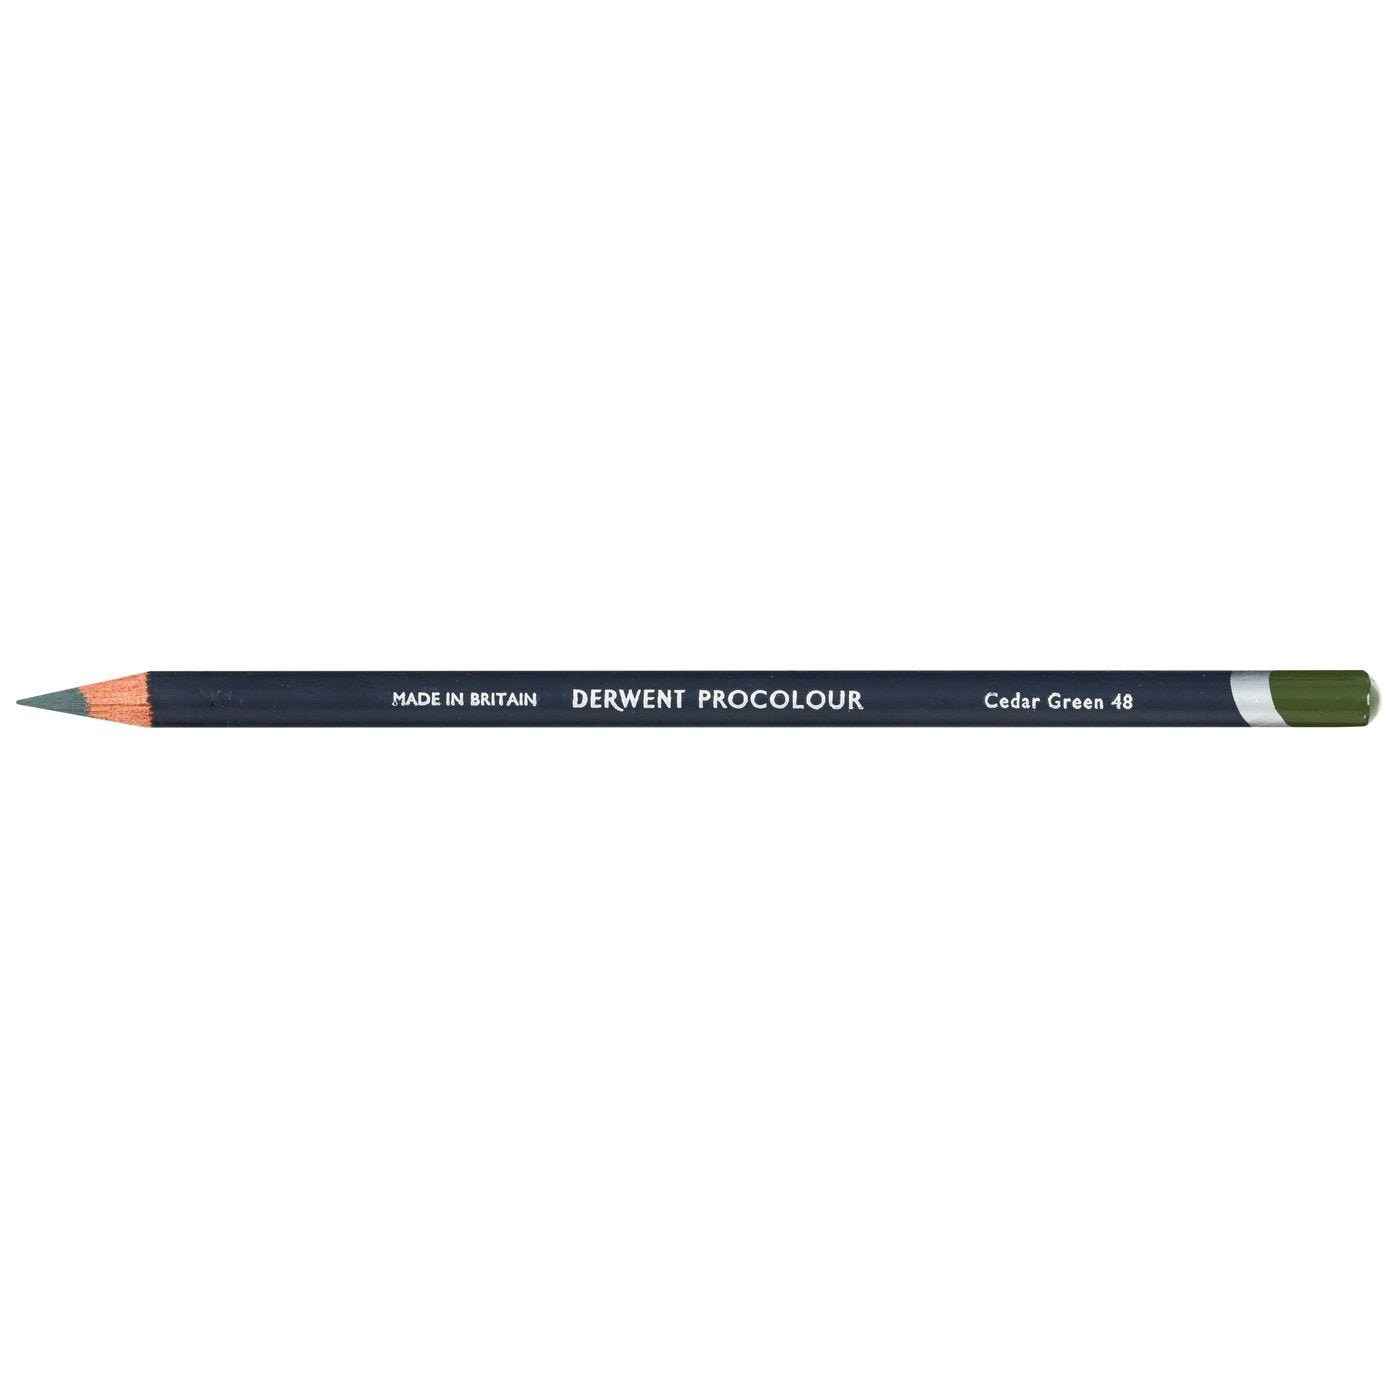 Derwent Procolour Pencil Cedar Green 48 - theartshop.com.au